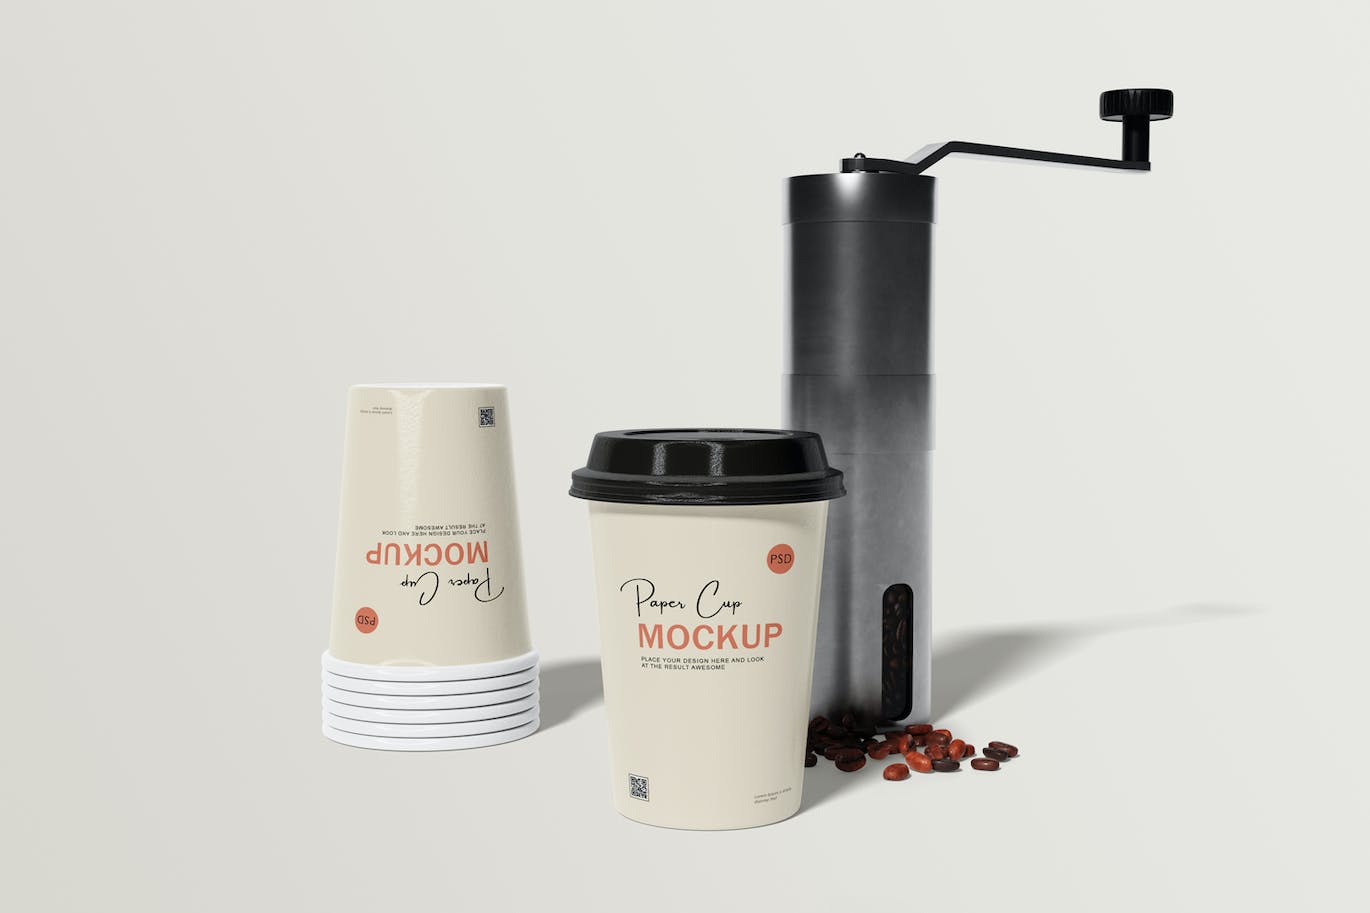 咖啡机咖啡杯包装设计样机 Coffee cup mockup with coffee machine 样机素材 第11张